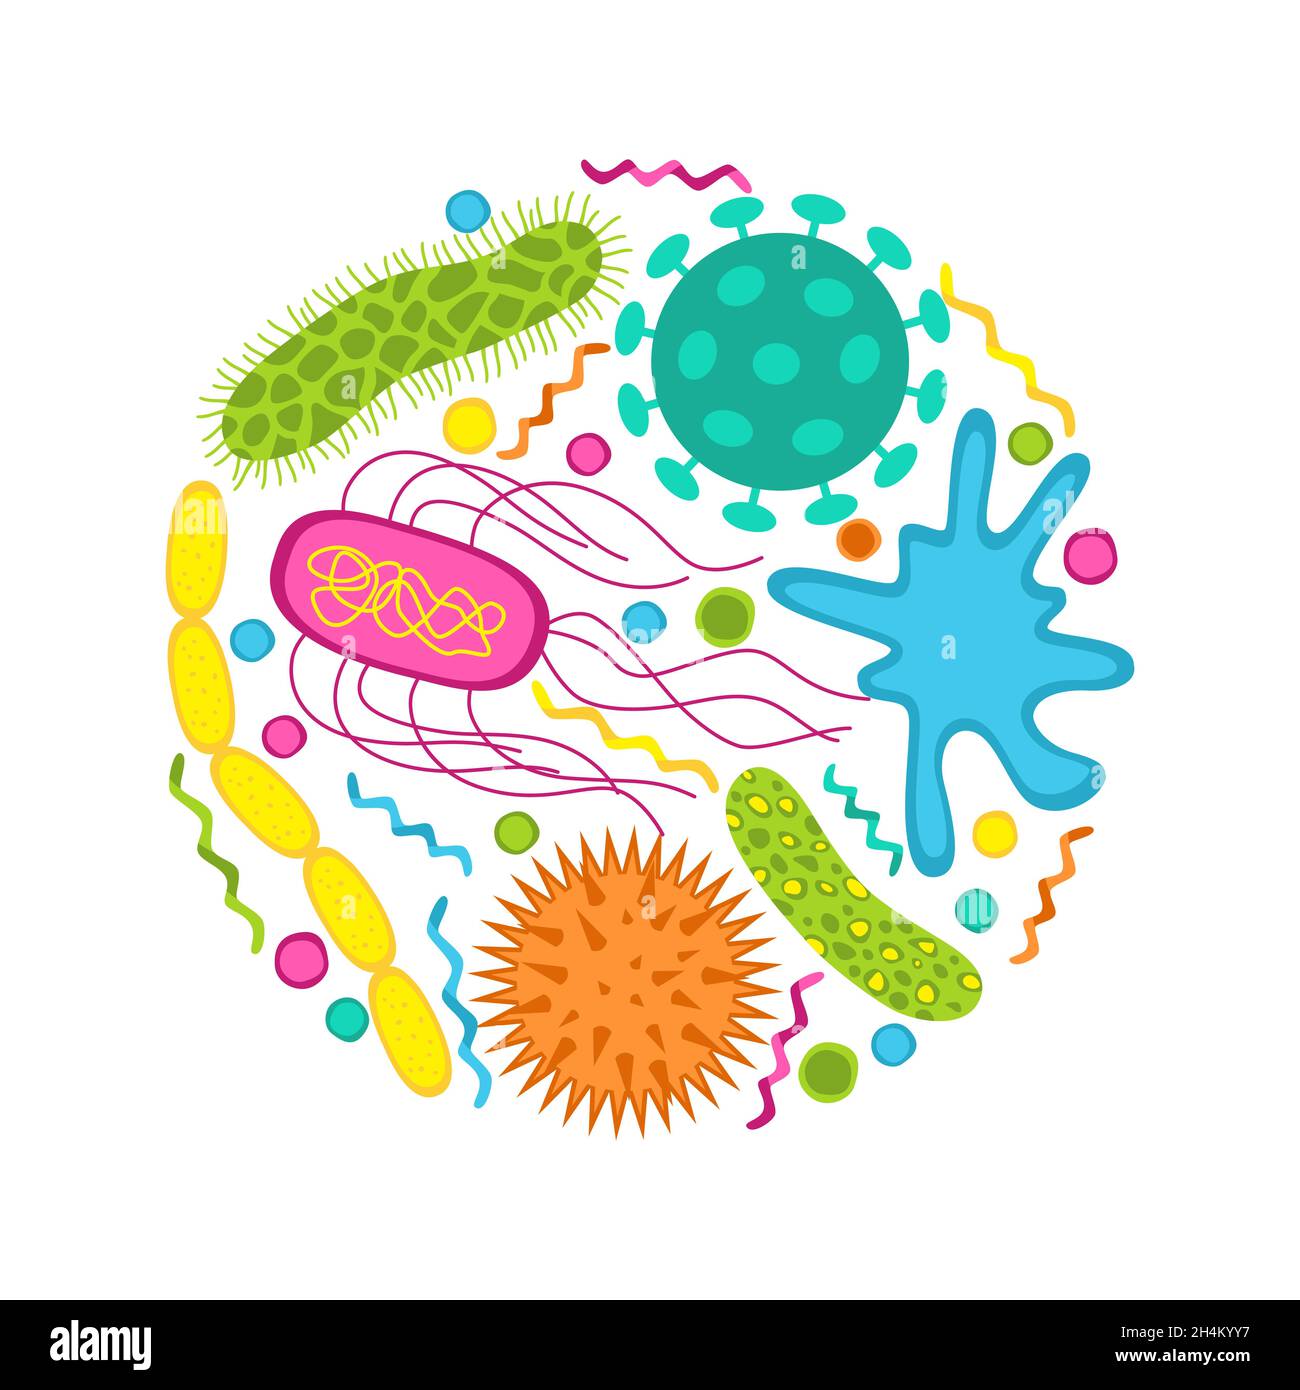 Bunte Keime und Bakterien-Symbole isoliert auf weißem Hintergrund gesetzt. Form der Bakterienzelle: cocci, Bazillen, Spirilla. Vektorgrafik. Stock Vektor